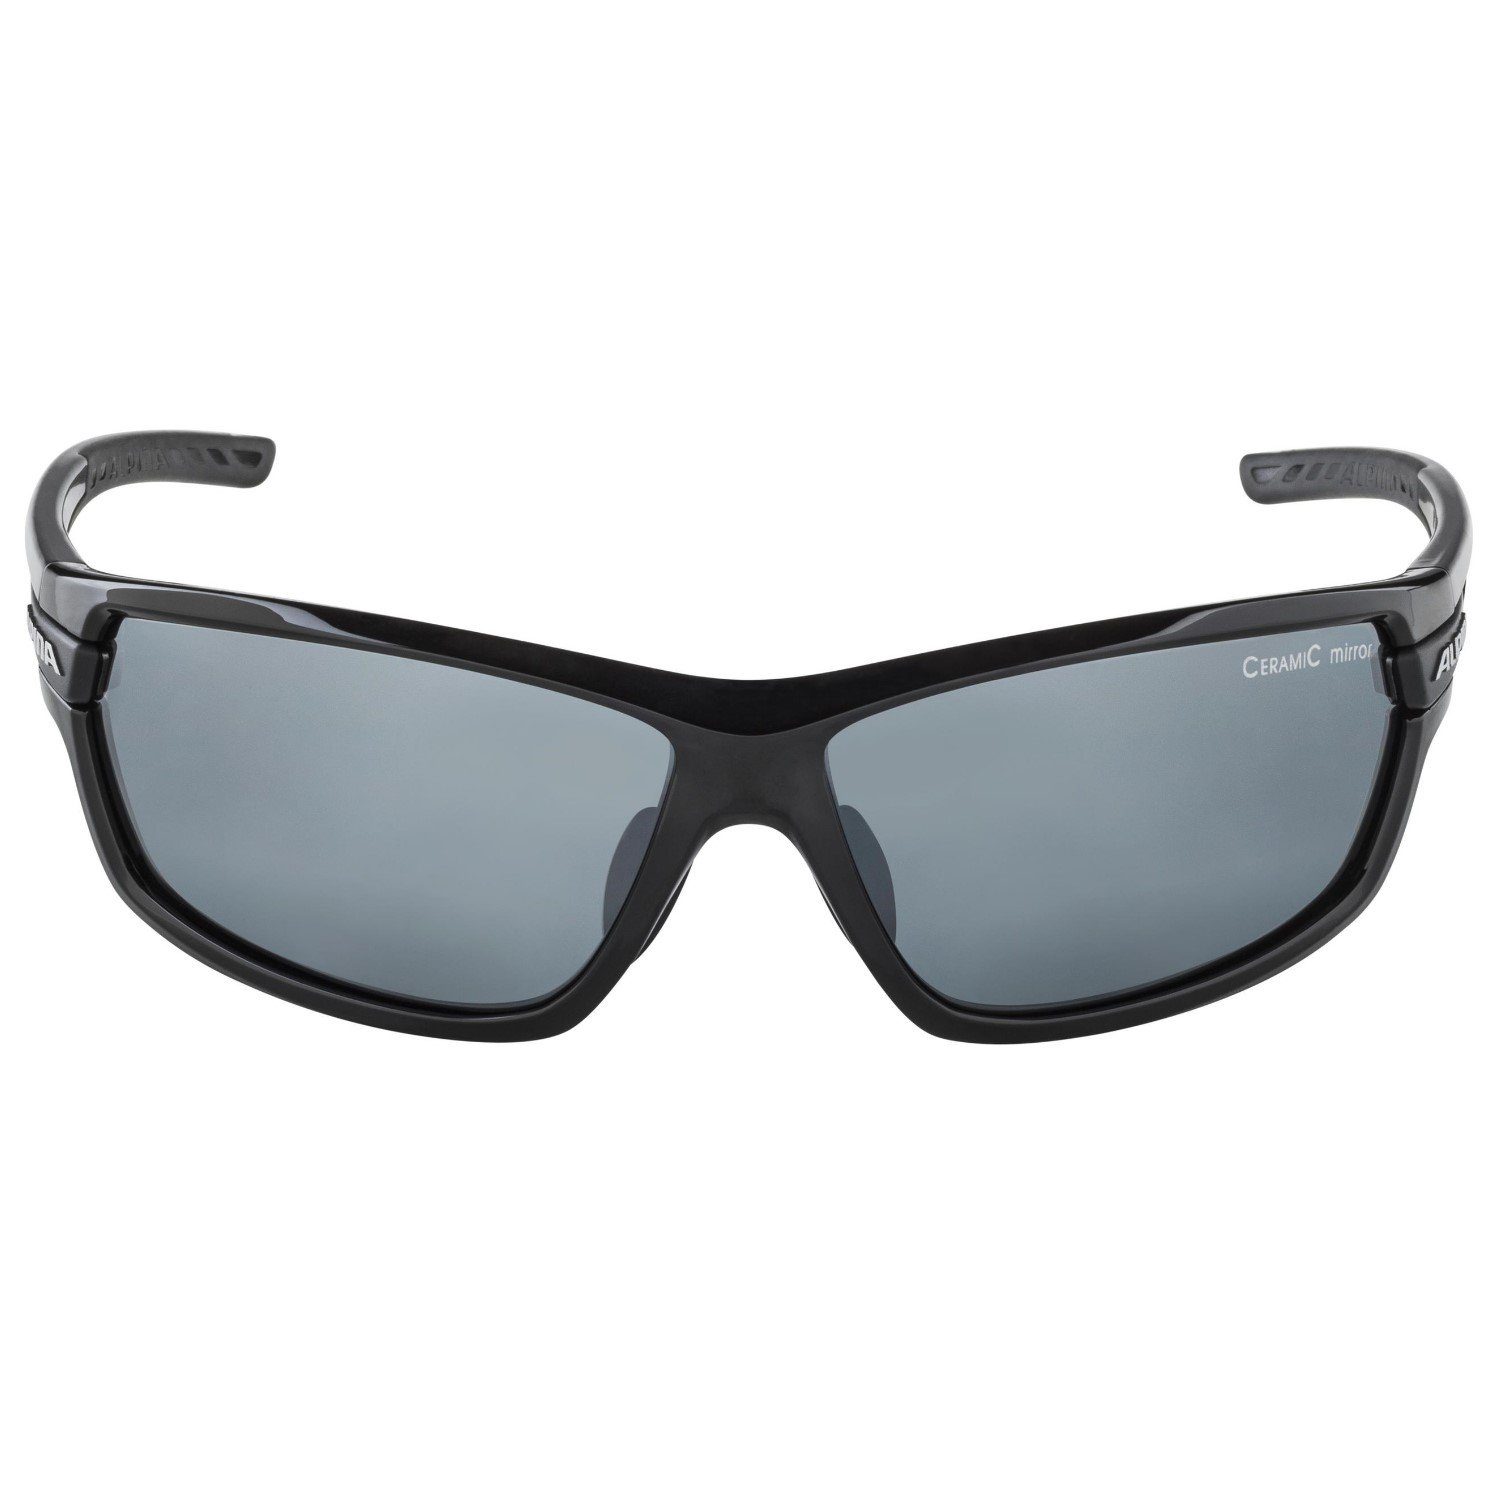 Alpina Sports Sportbrille TRI-Scray mit 2.0 Wechselscheiben Sonnenbrille Schwarz